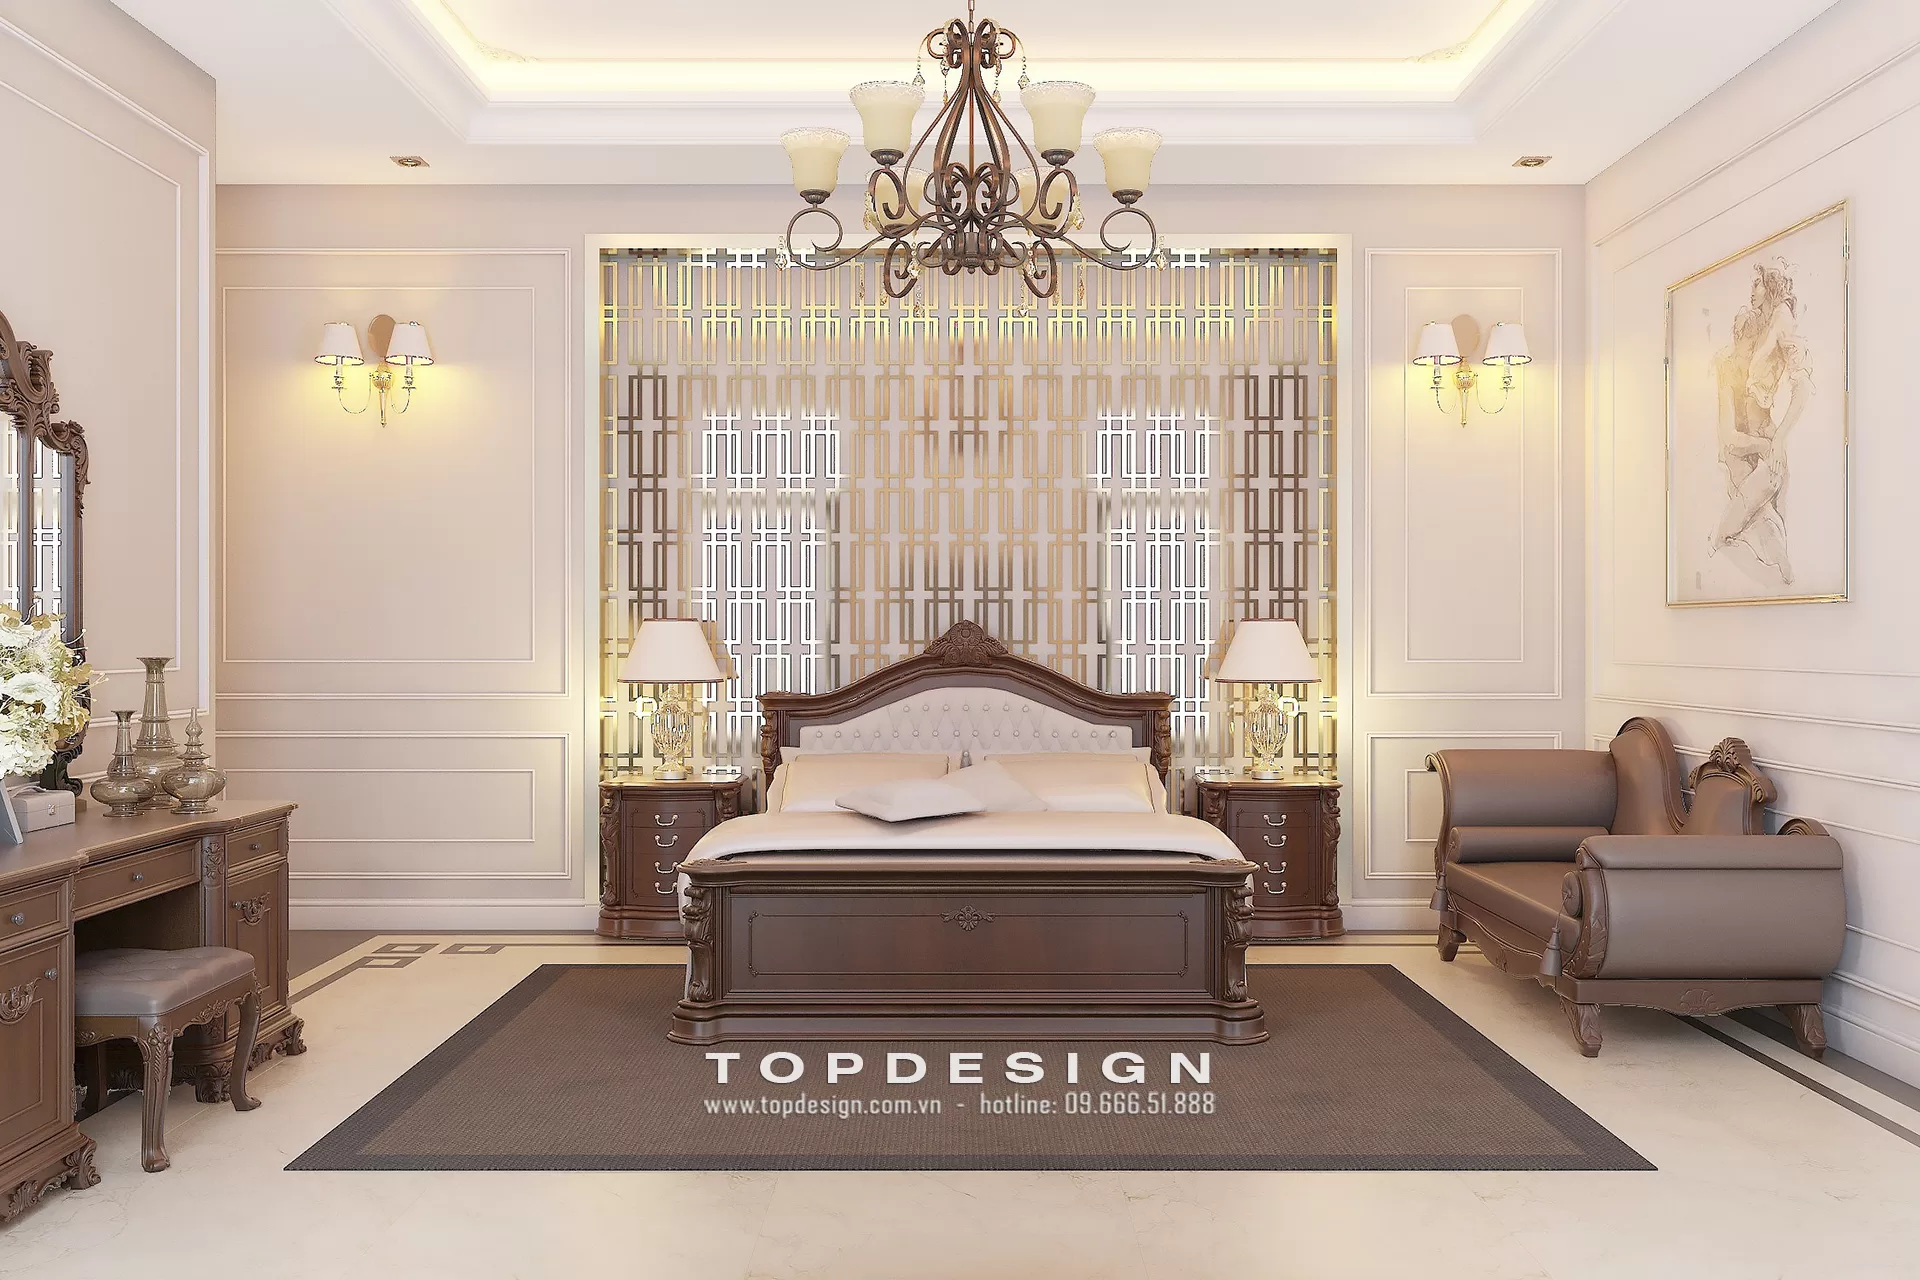 Mẫu thiết kế nhà phố tân cổ điển - TOPDESIGN - 11